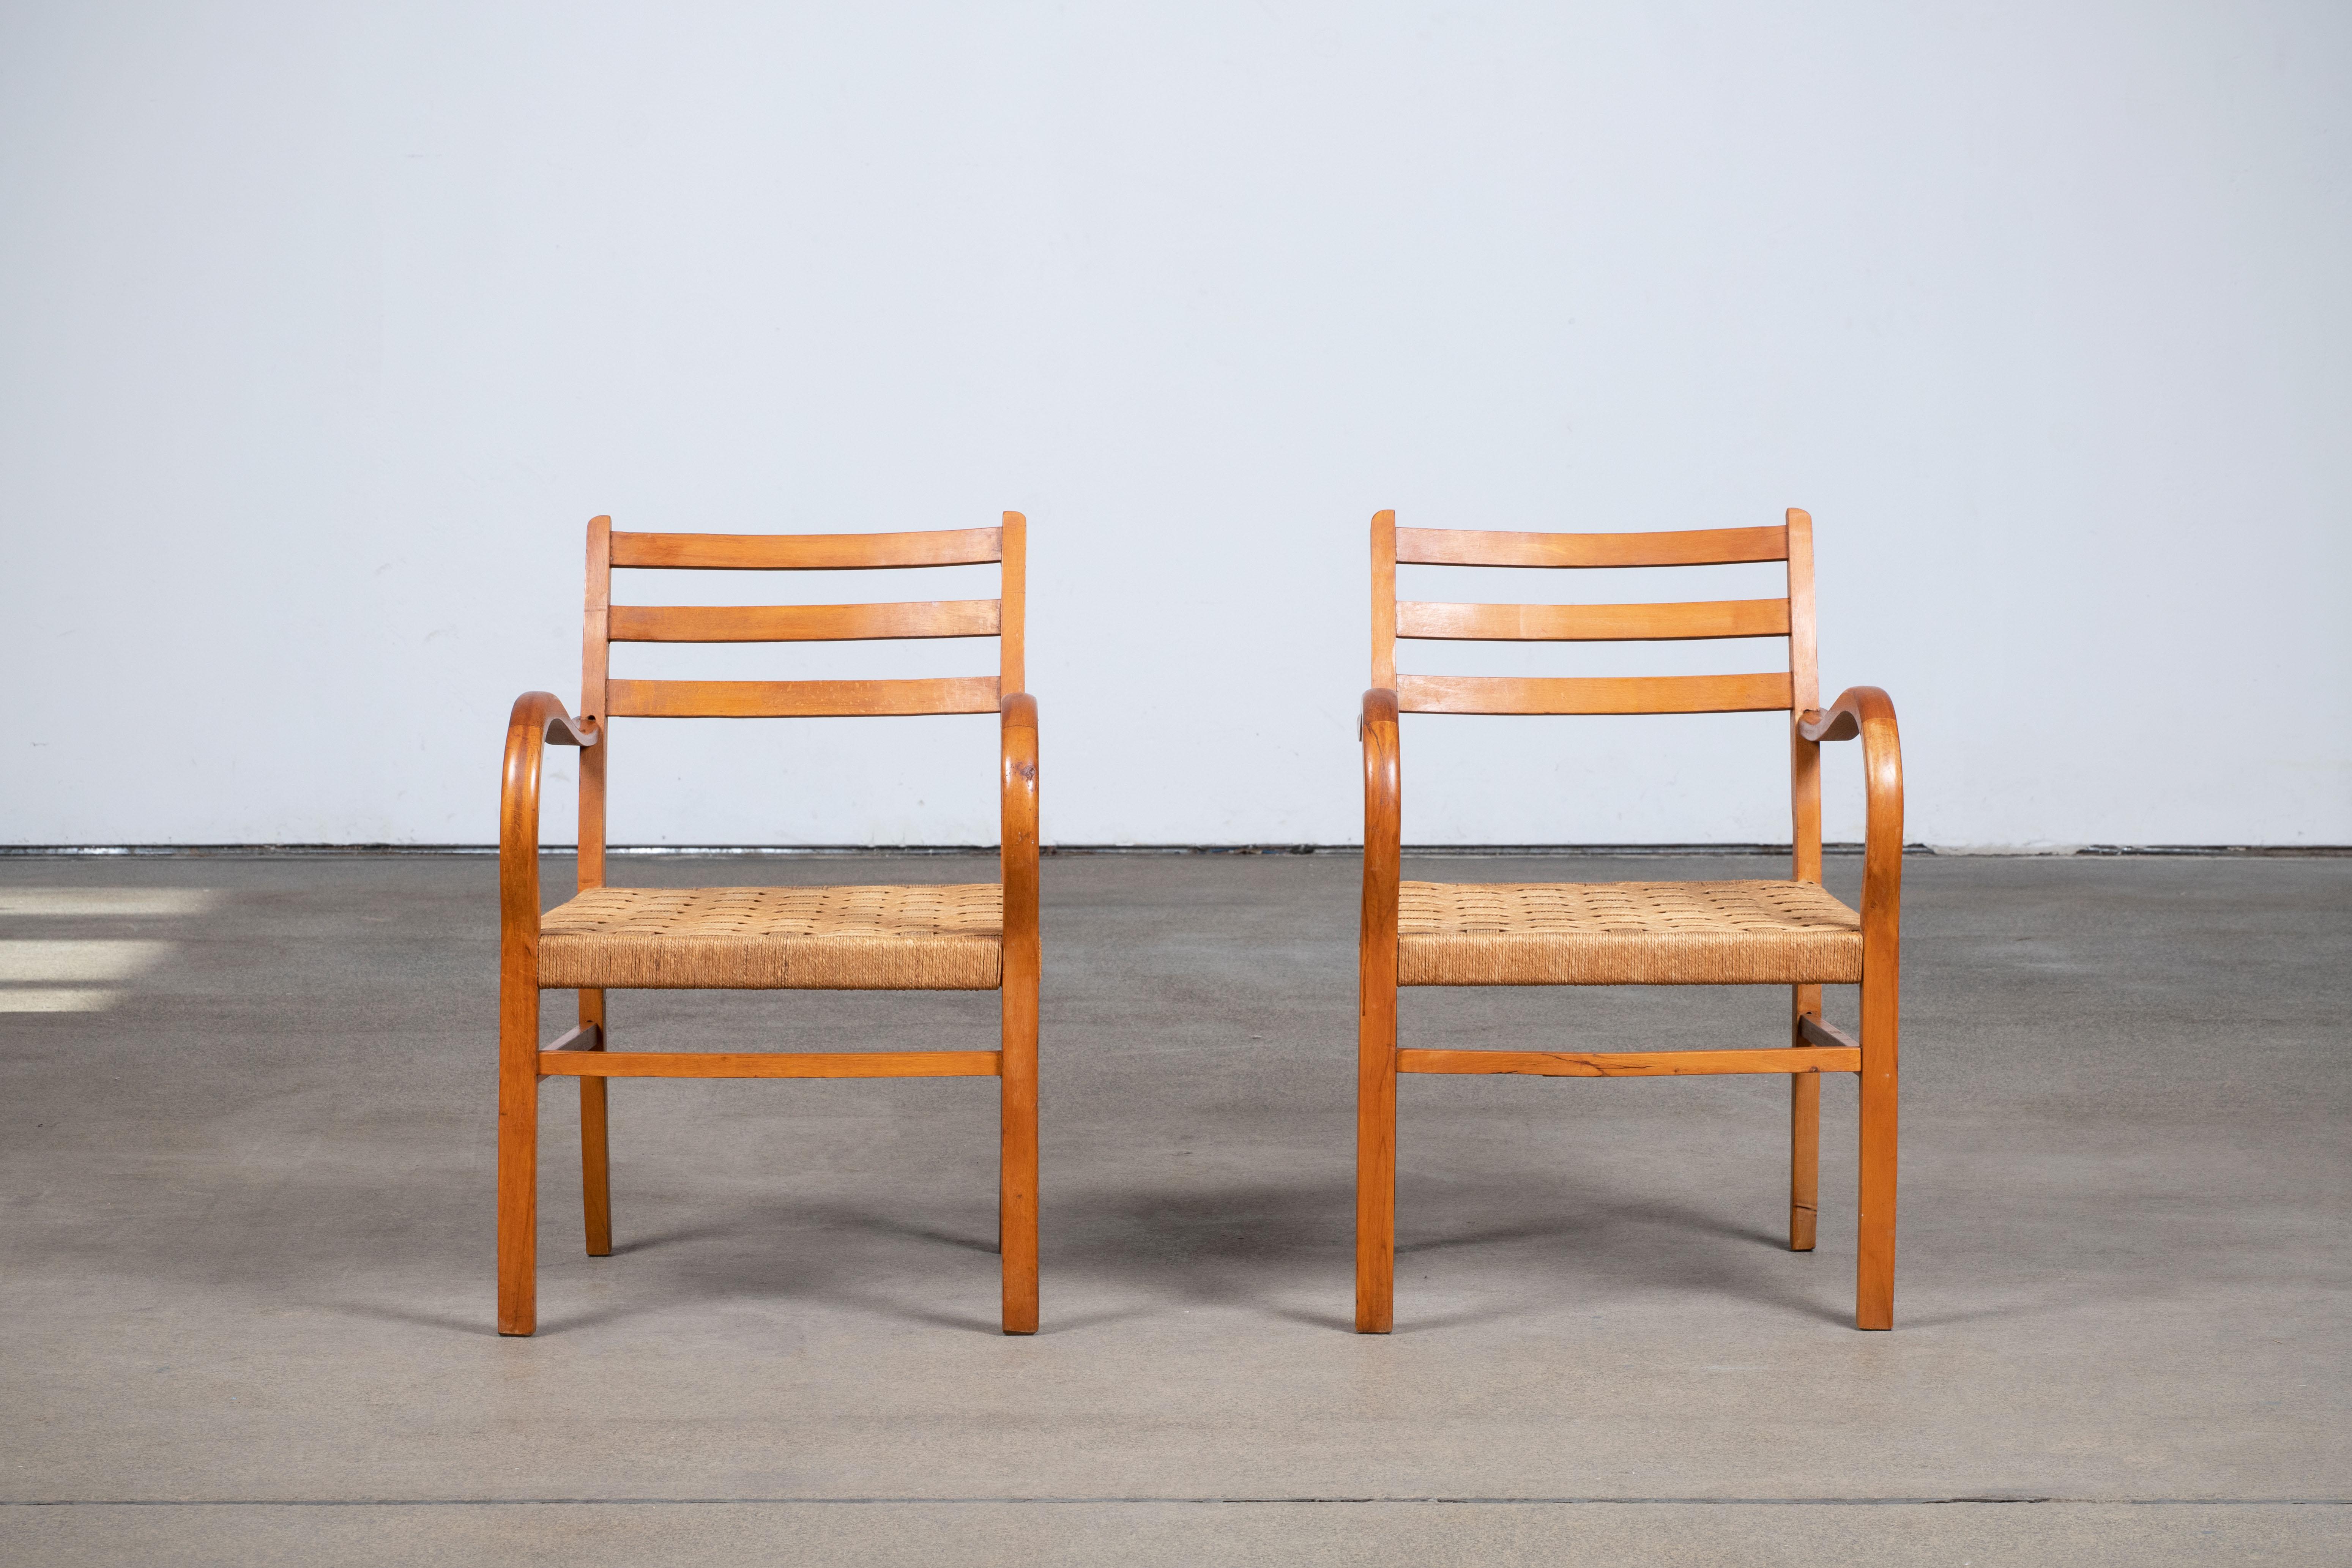 Ein Paar Bauhaus-Sessel von Erich Dieckmann, 1925.
Zusammen mit Marcel Breuer gilt er als der wichtigste Bauhaus-Möbeldesigner. Er entwickelte vor allem Möbel, zunächst aus Holz in geometrischer Grundform mit rechteckigen Rahmen und